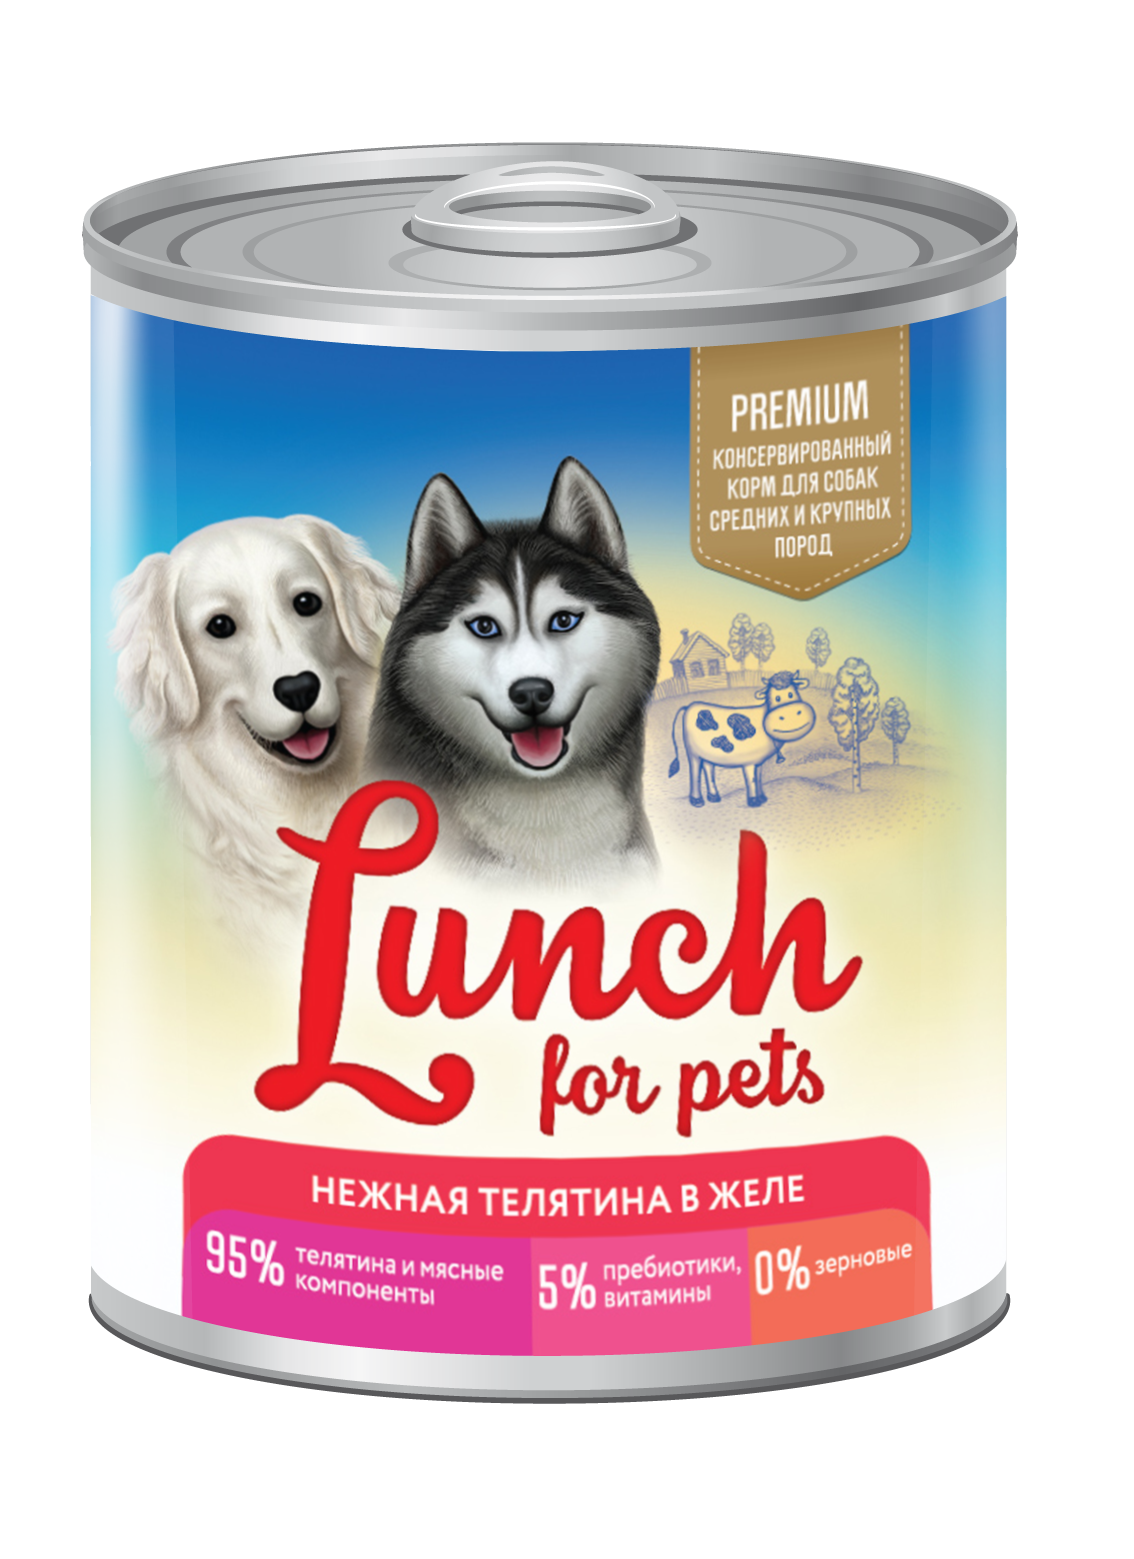 Консервы для собак Lunch for pets, нежная телятина, кусочки в желе, 850г